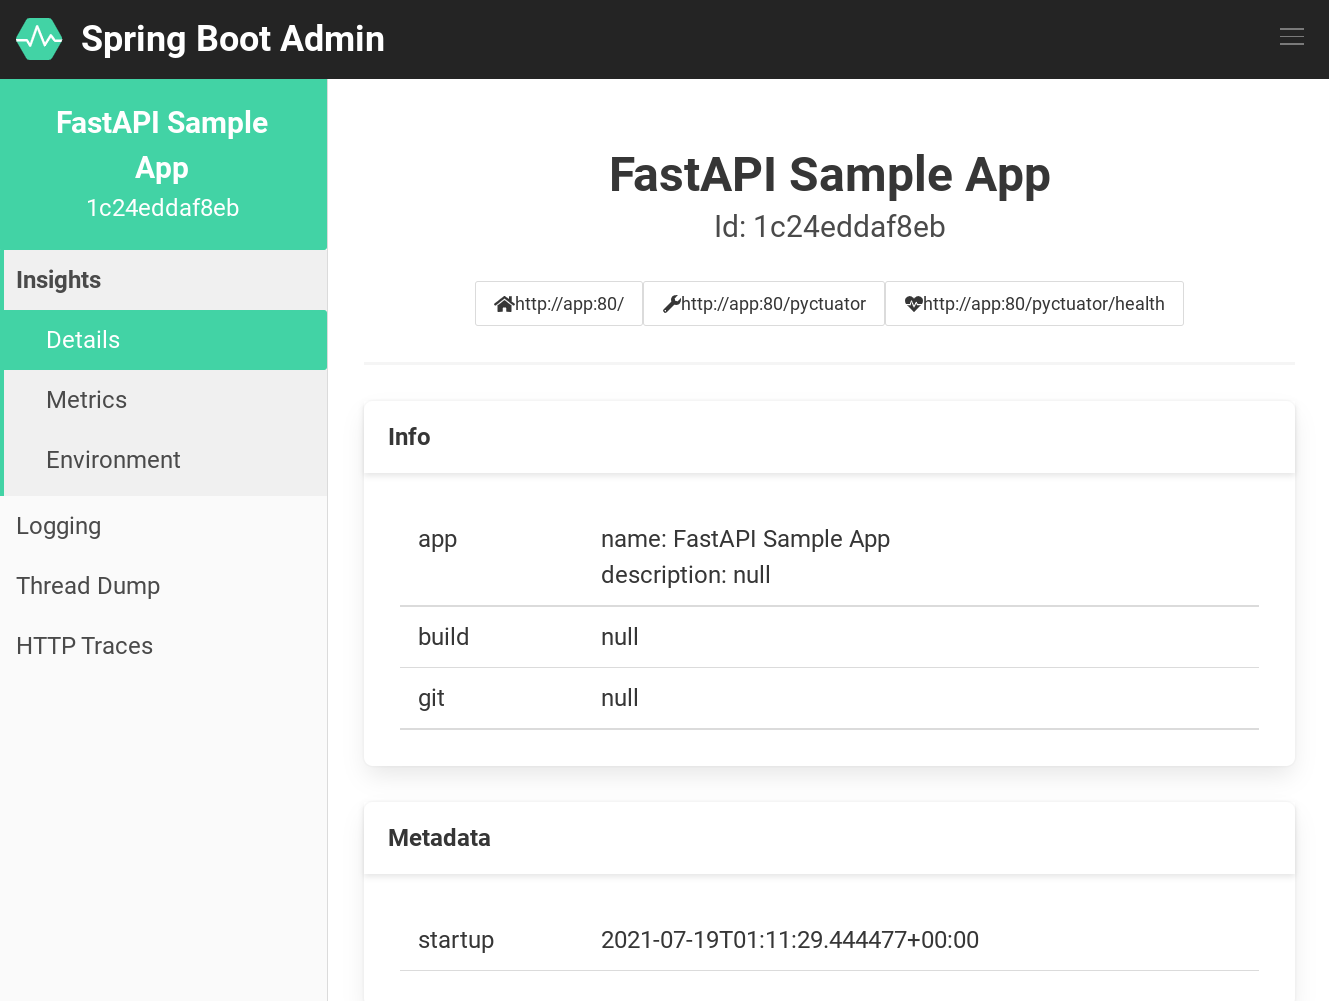 FastAPI in Spring Boot Admin